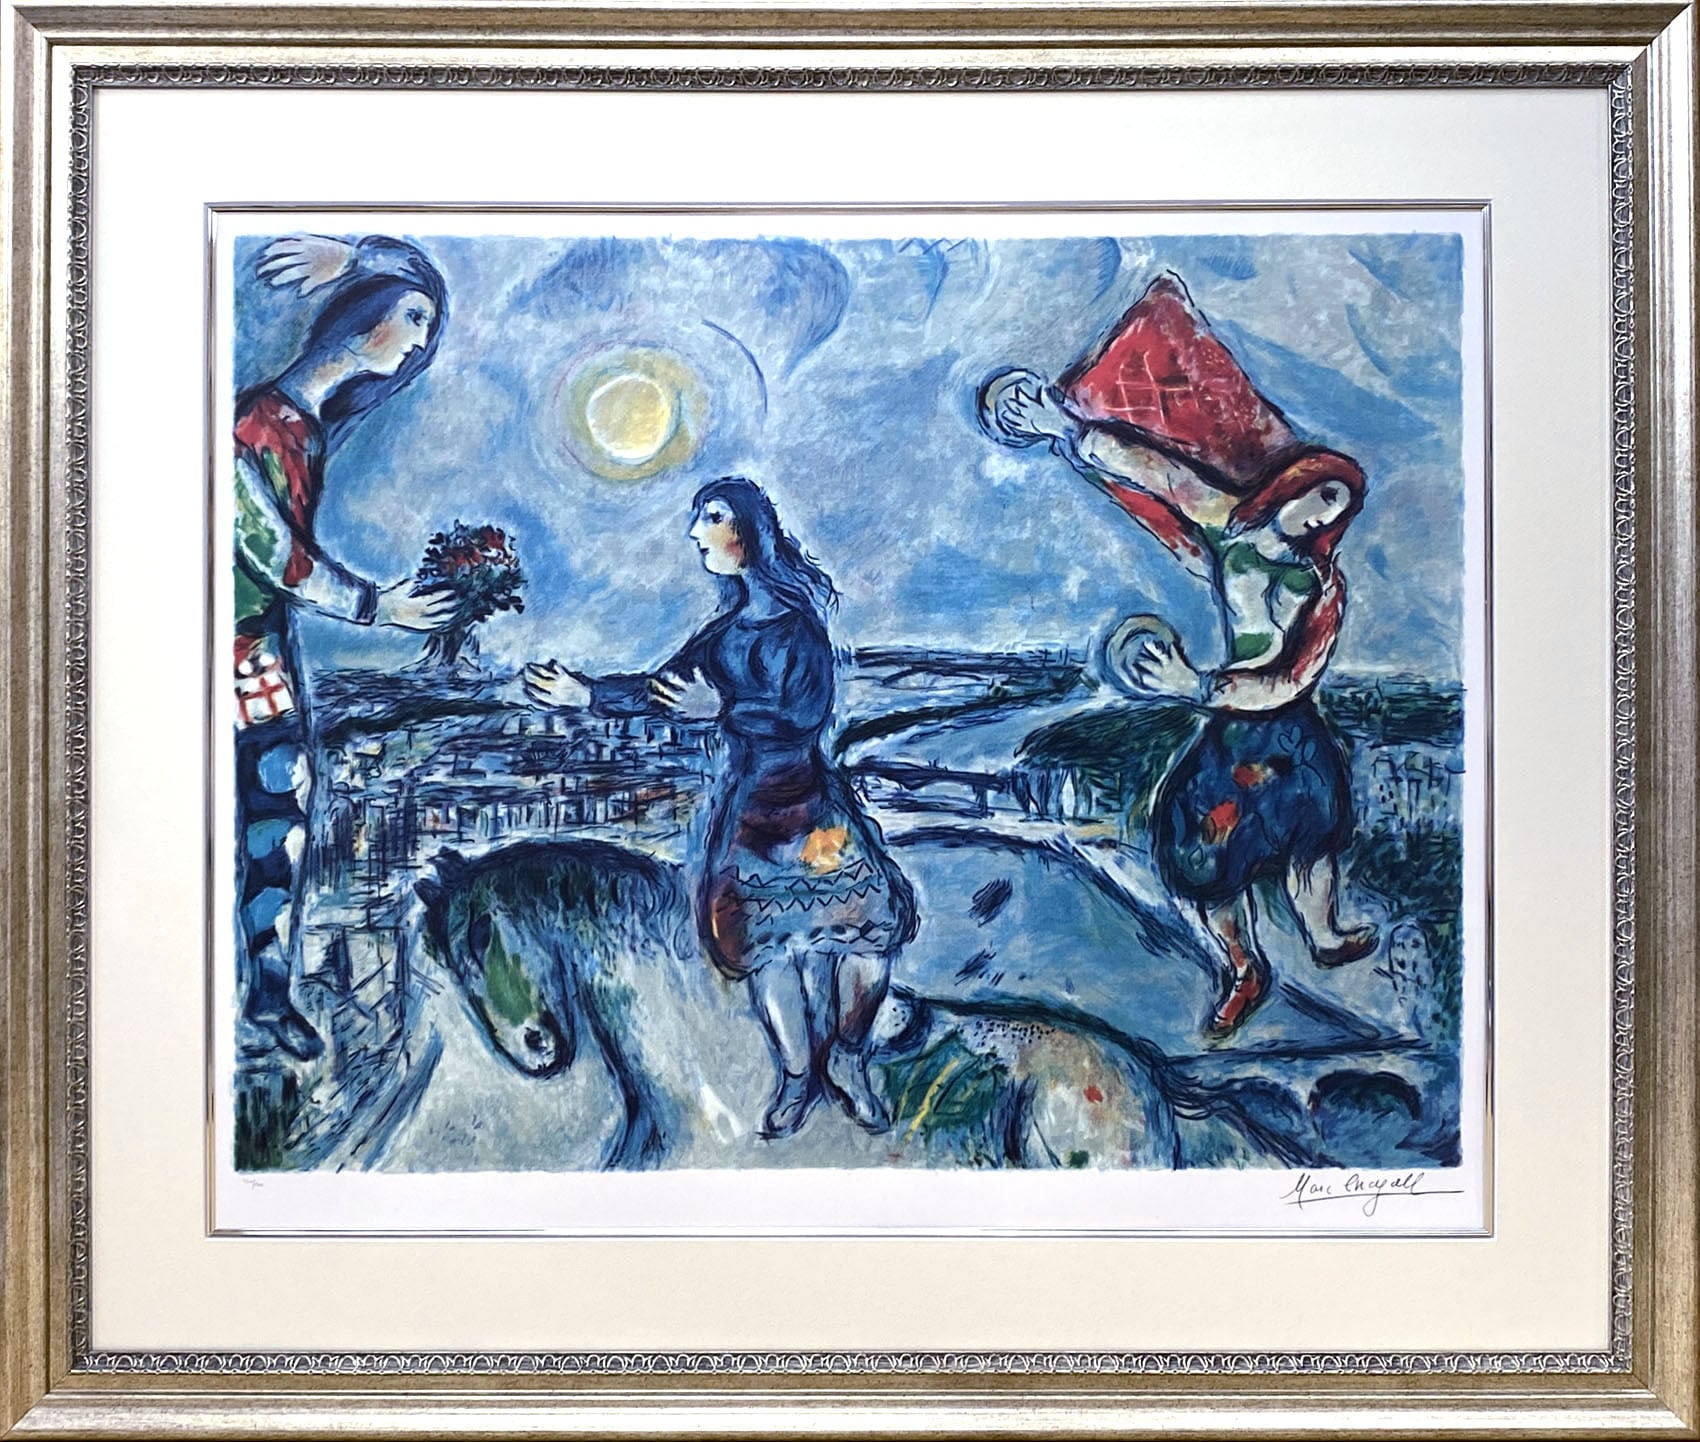 マルク・シャガール絵画「パリの恋人」作品証明書・展示用フック・限定